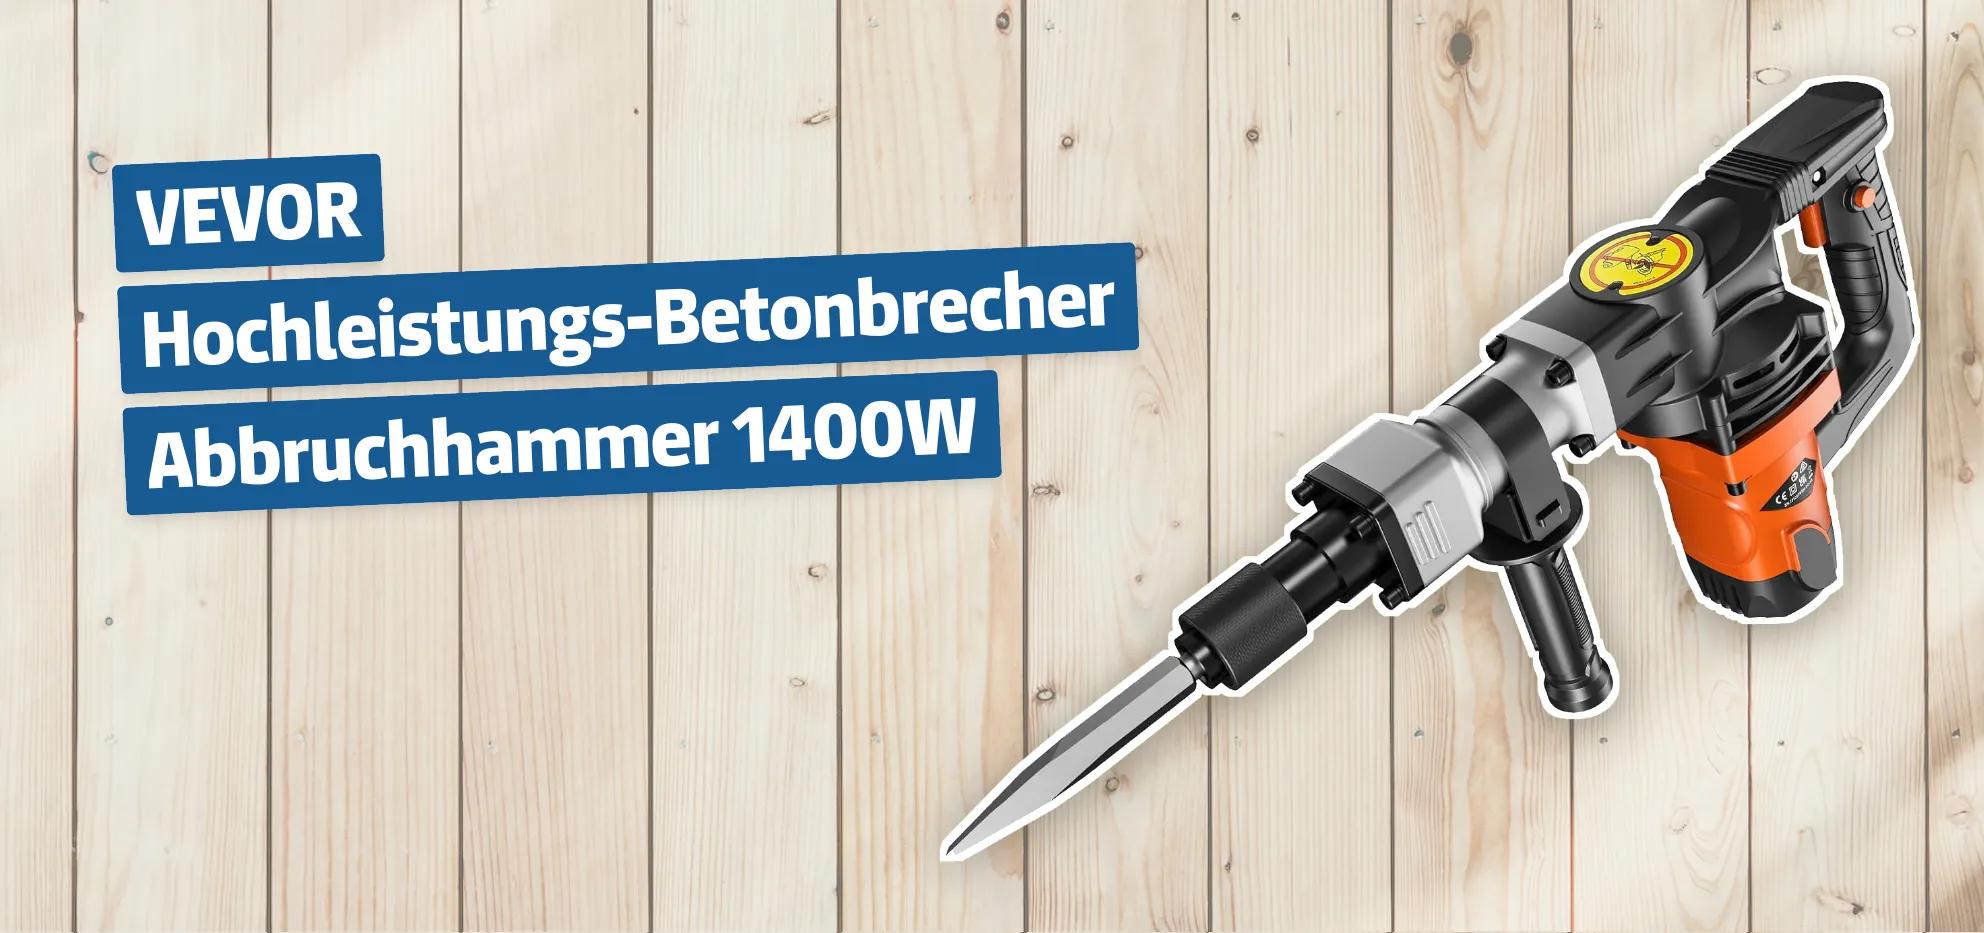 VEVOR Hochleistungs-Betonbrecher Abbruchhammer 1400W